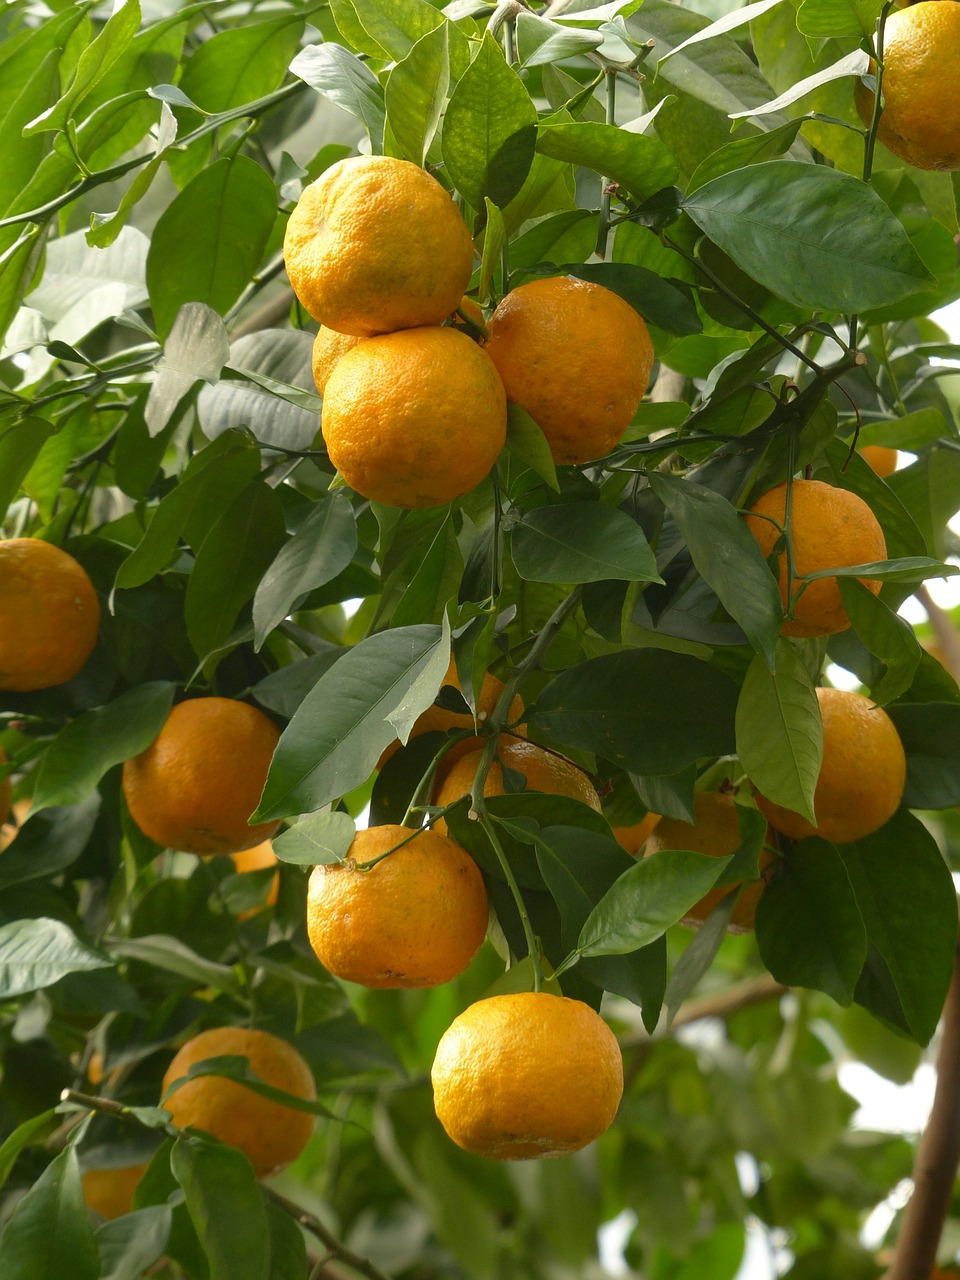 Oda, Vaisiai, Kartūs Apelsinai, Citrusų Aurantium, Sevilija Oranžinė, Rūgšta Oranžinė, Citrusiniai, Oranžinis Panašus, Oranžinė, Medis